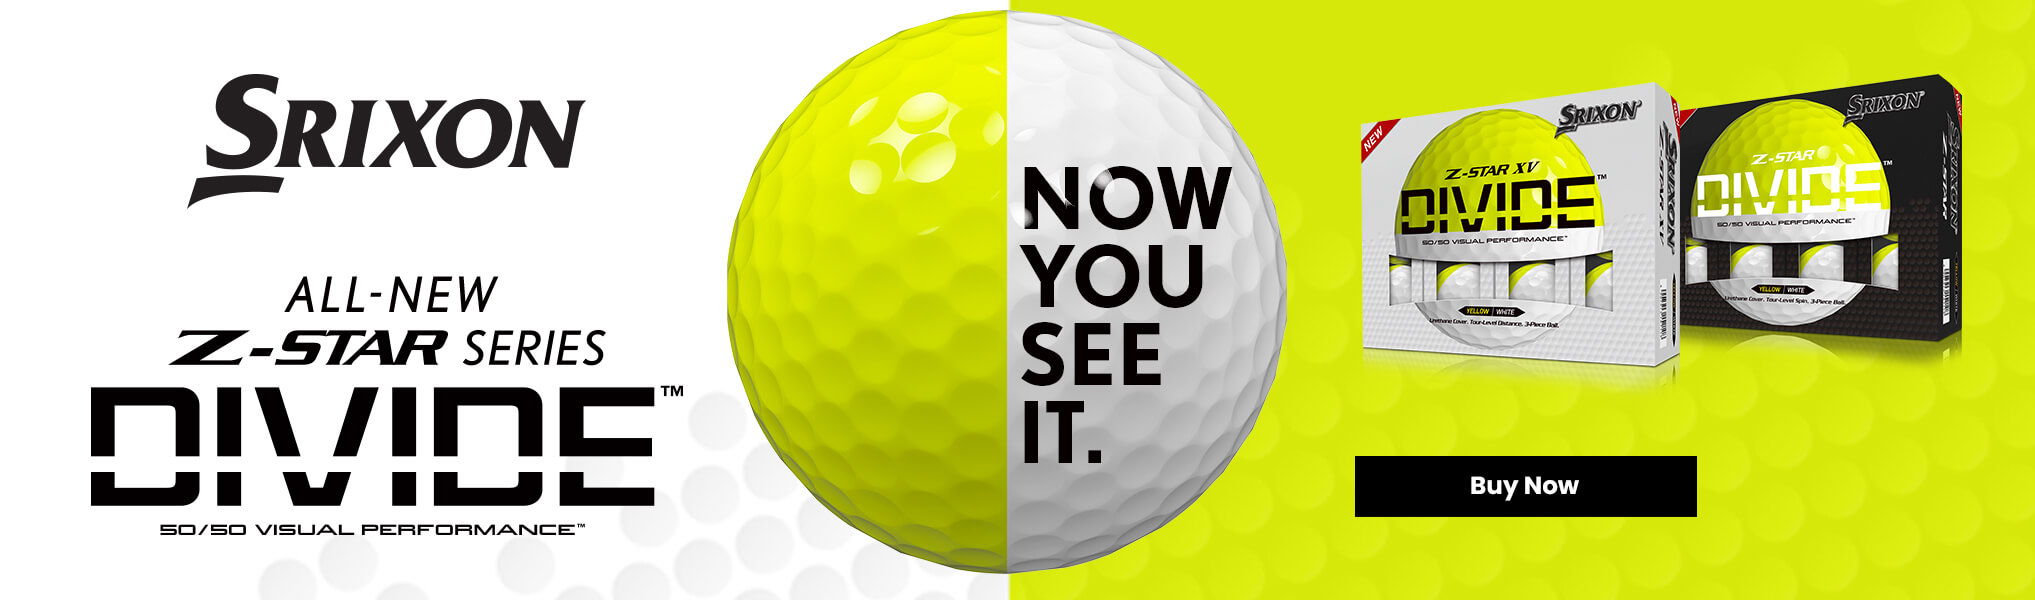 Srixon Divide Golf Balls